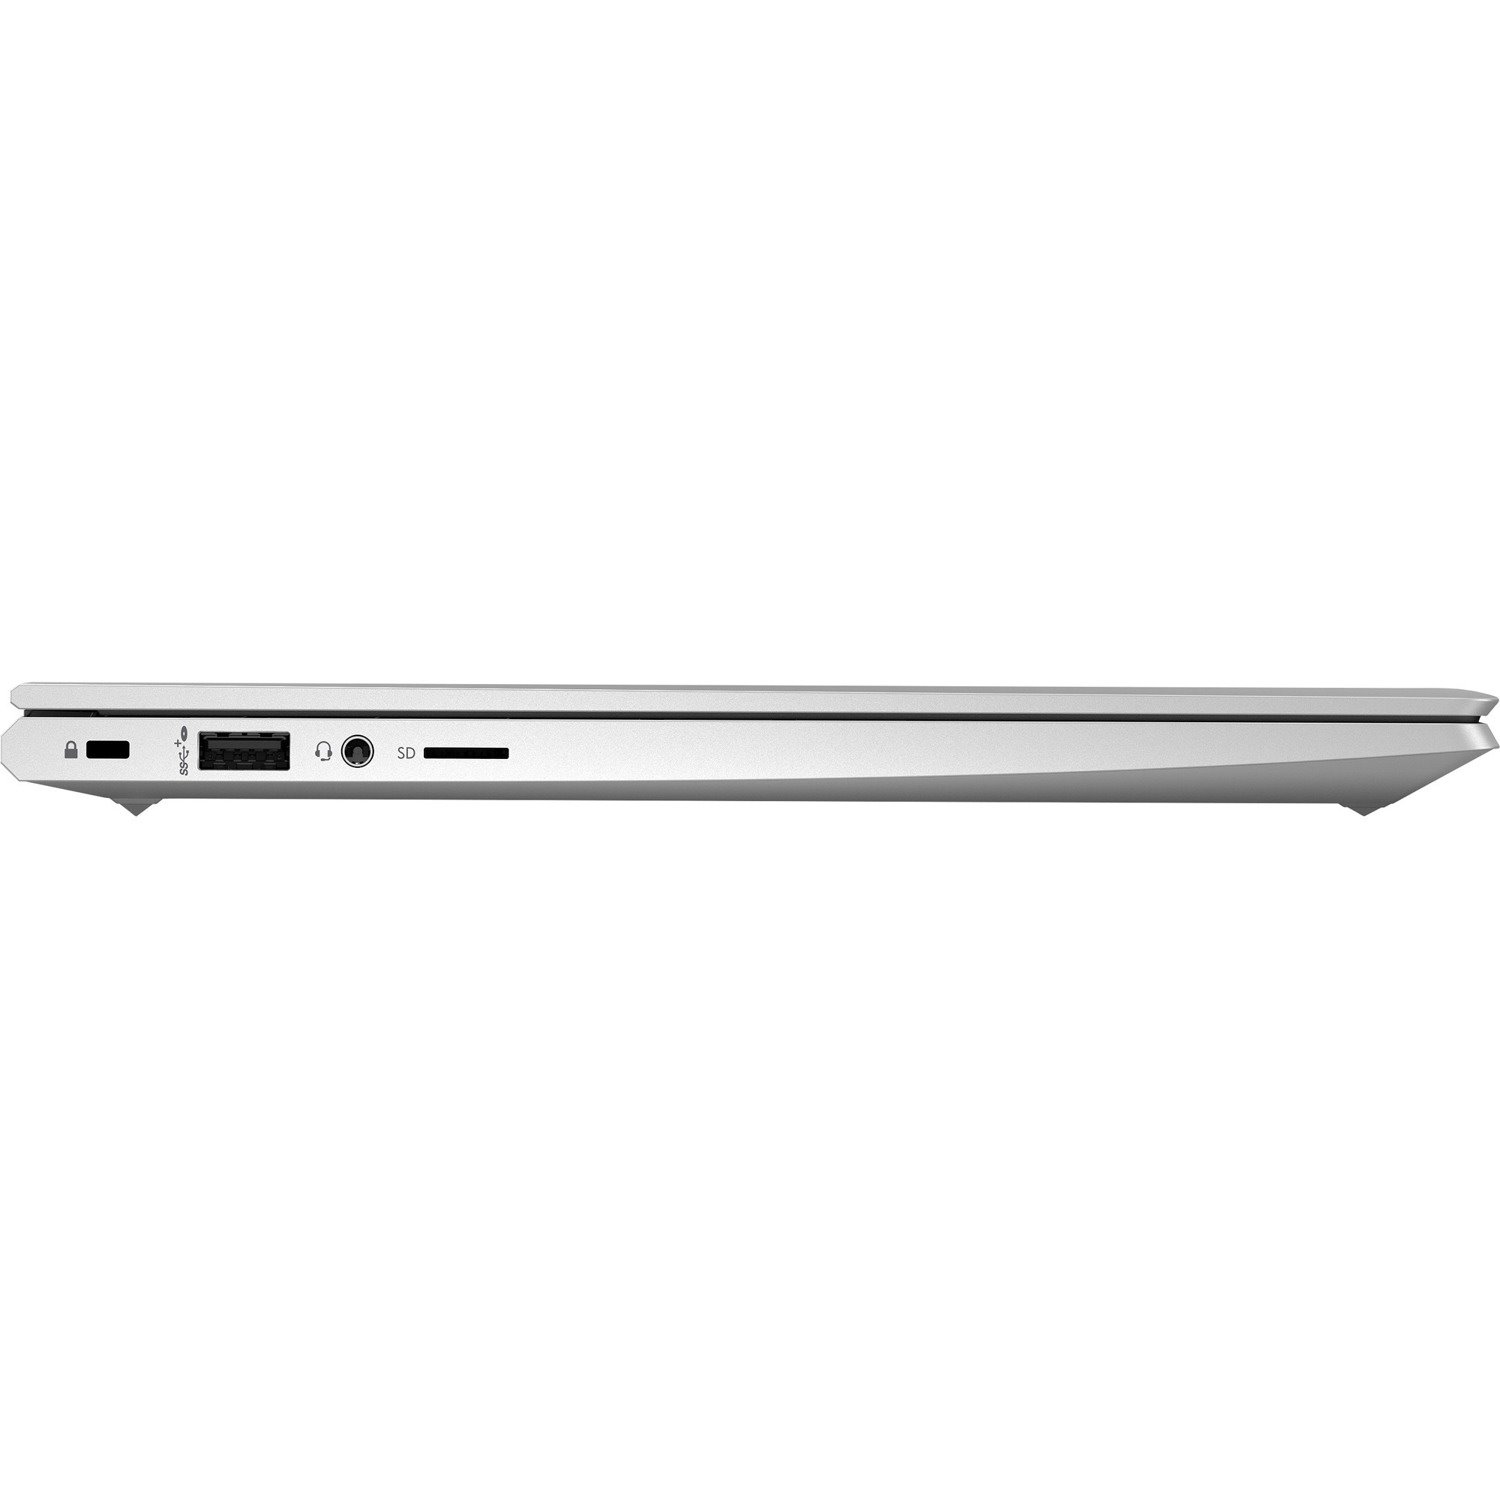 HP ProBook 430 G8 13.3" Notebook